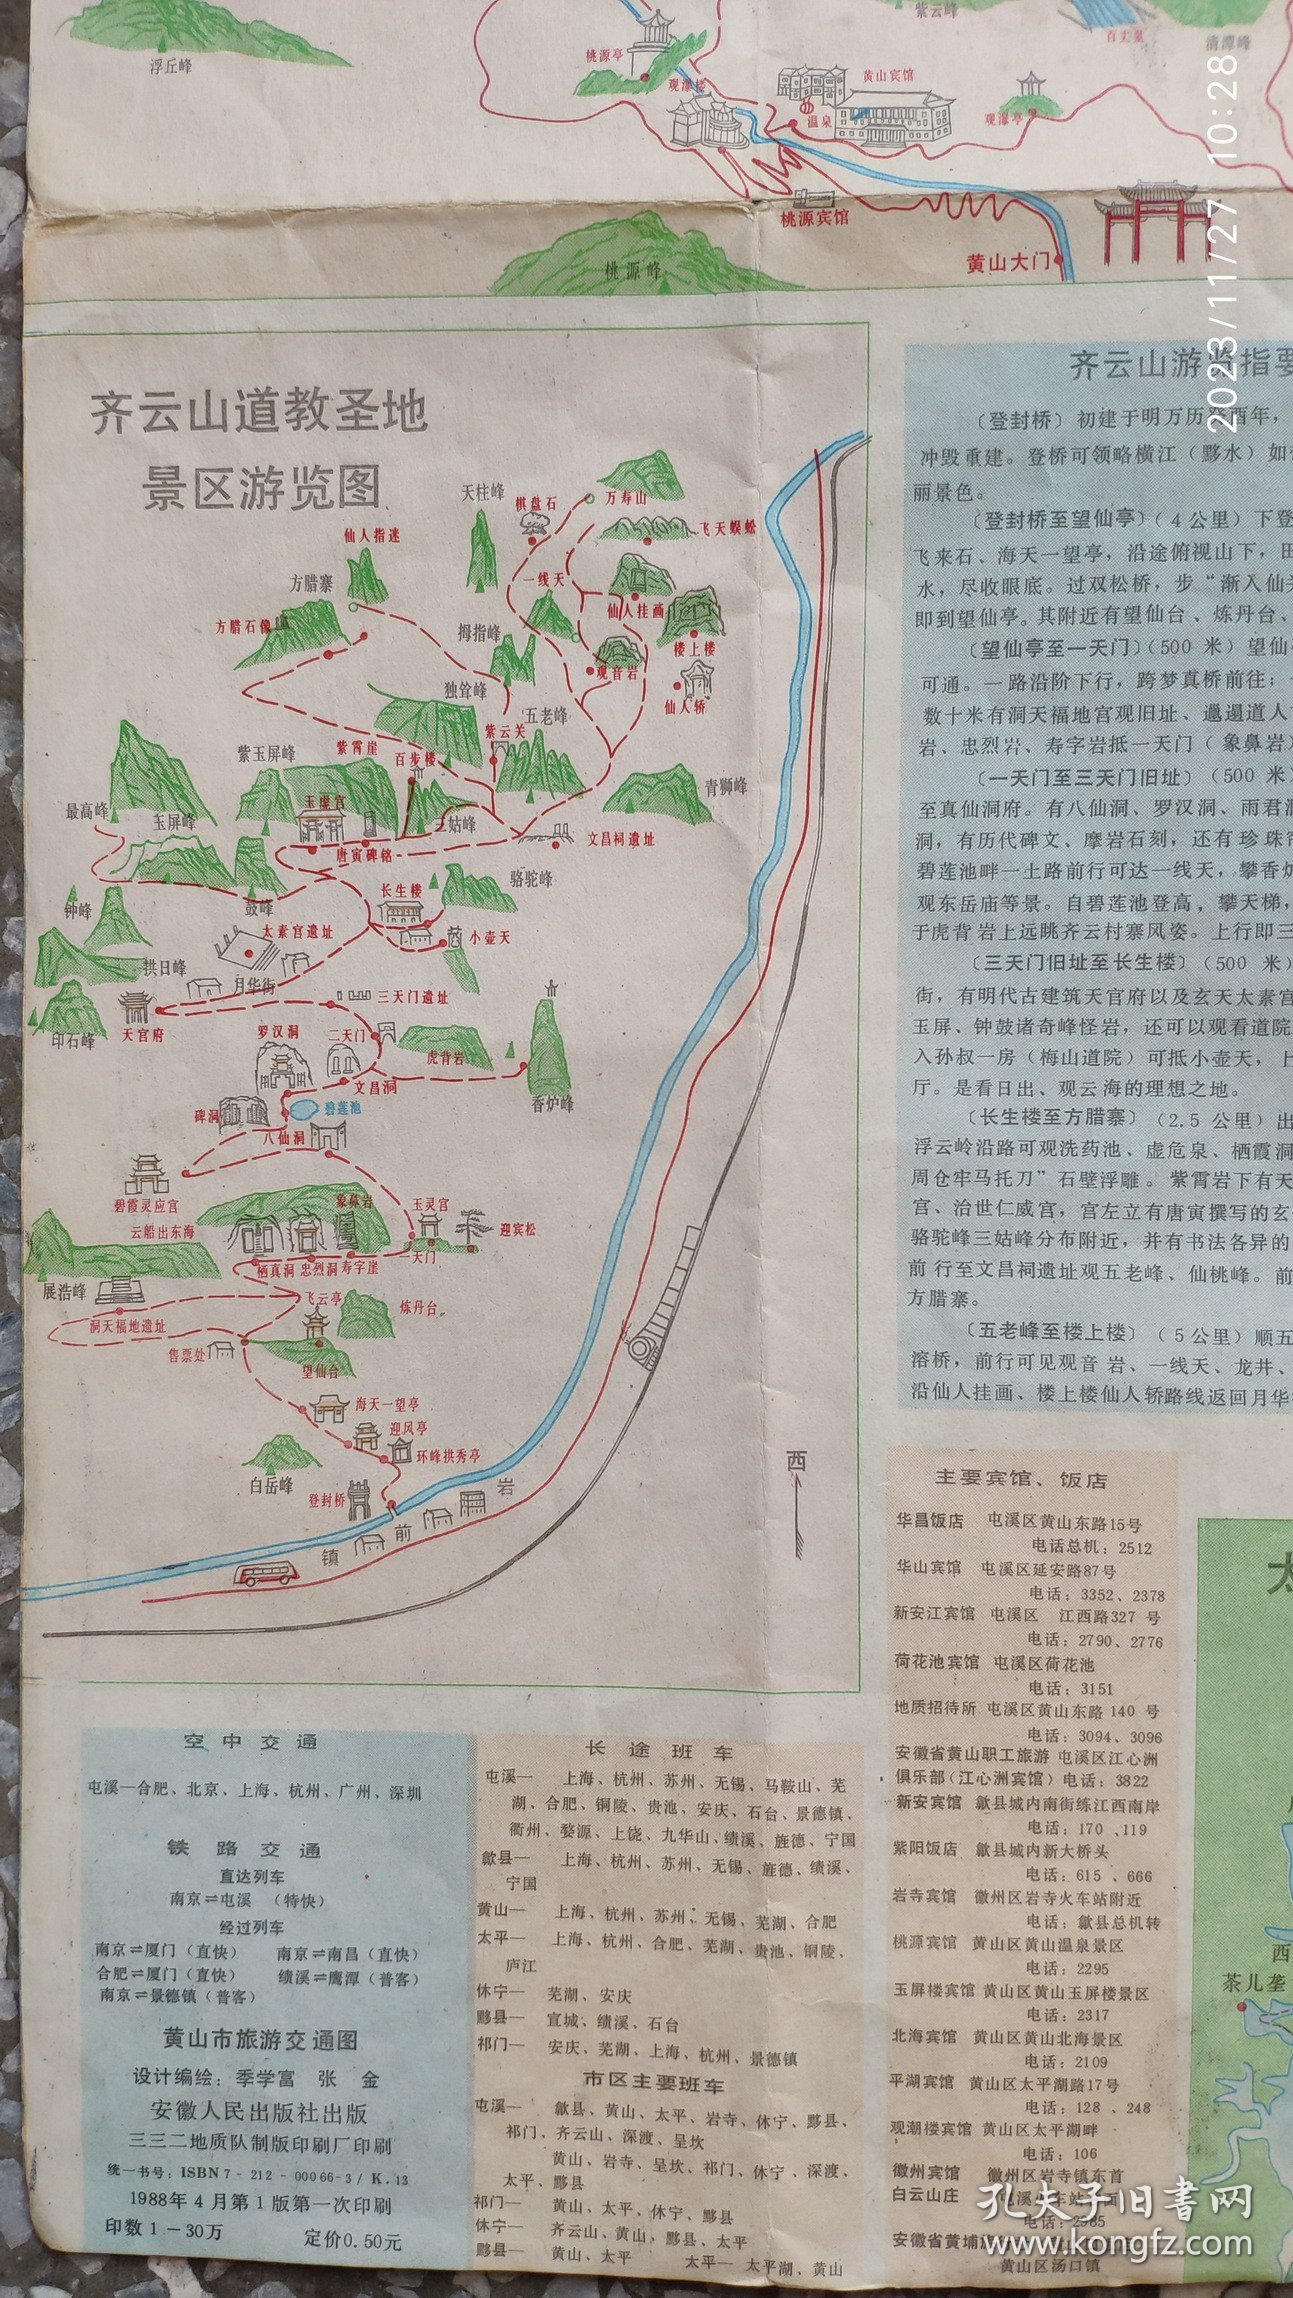 1988年黄山市旅游交通游图1